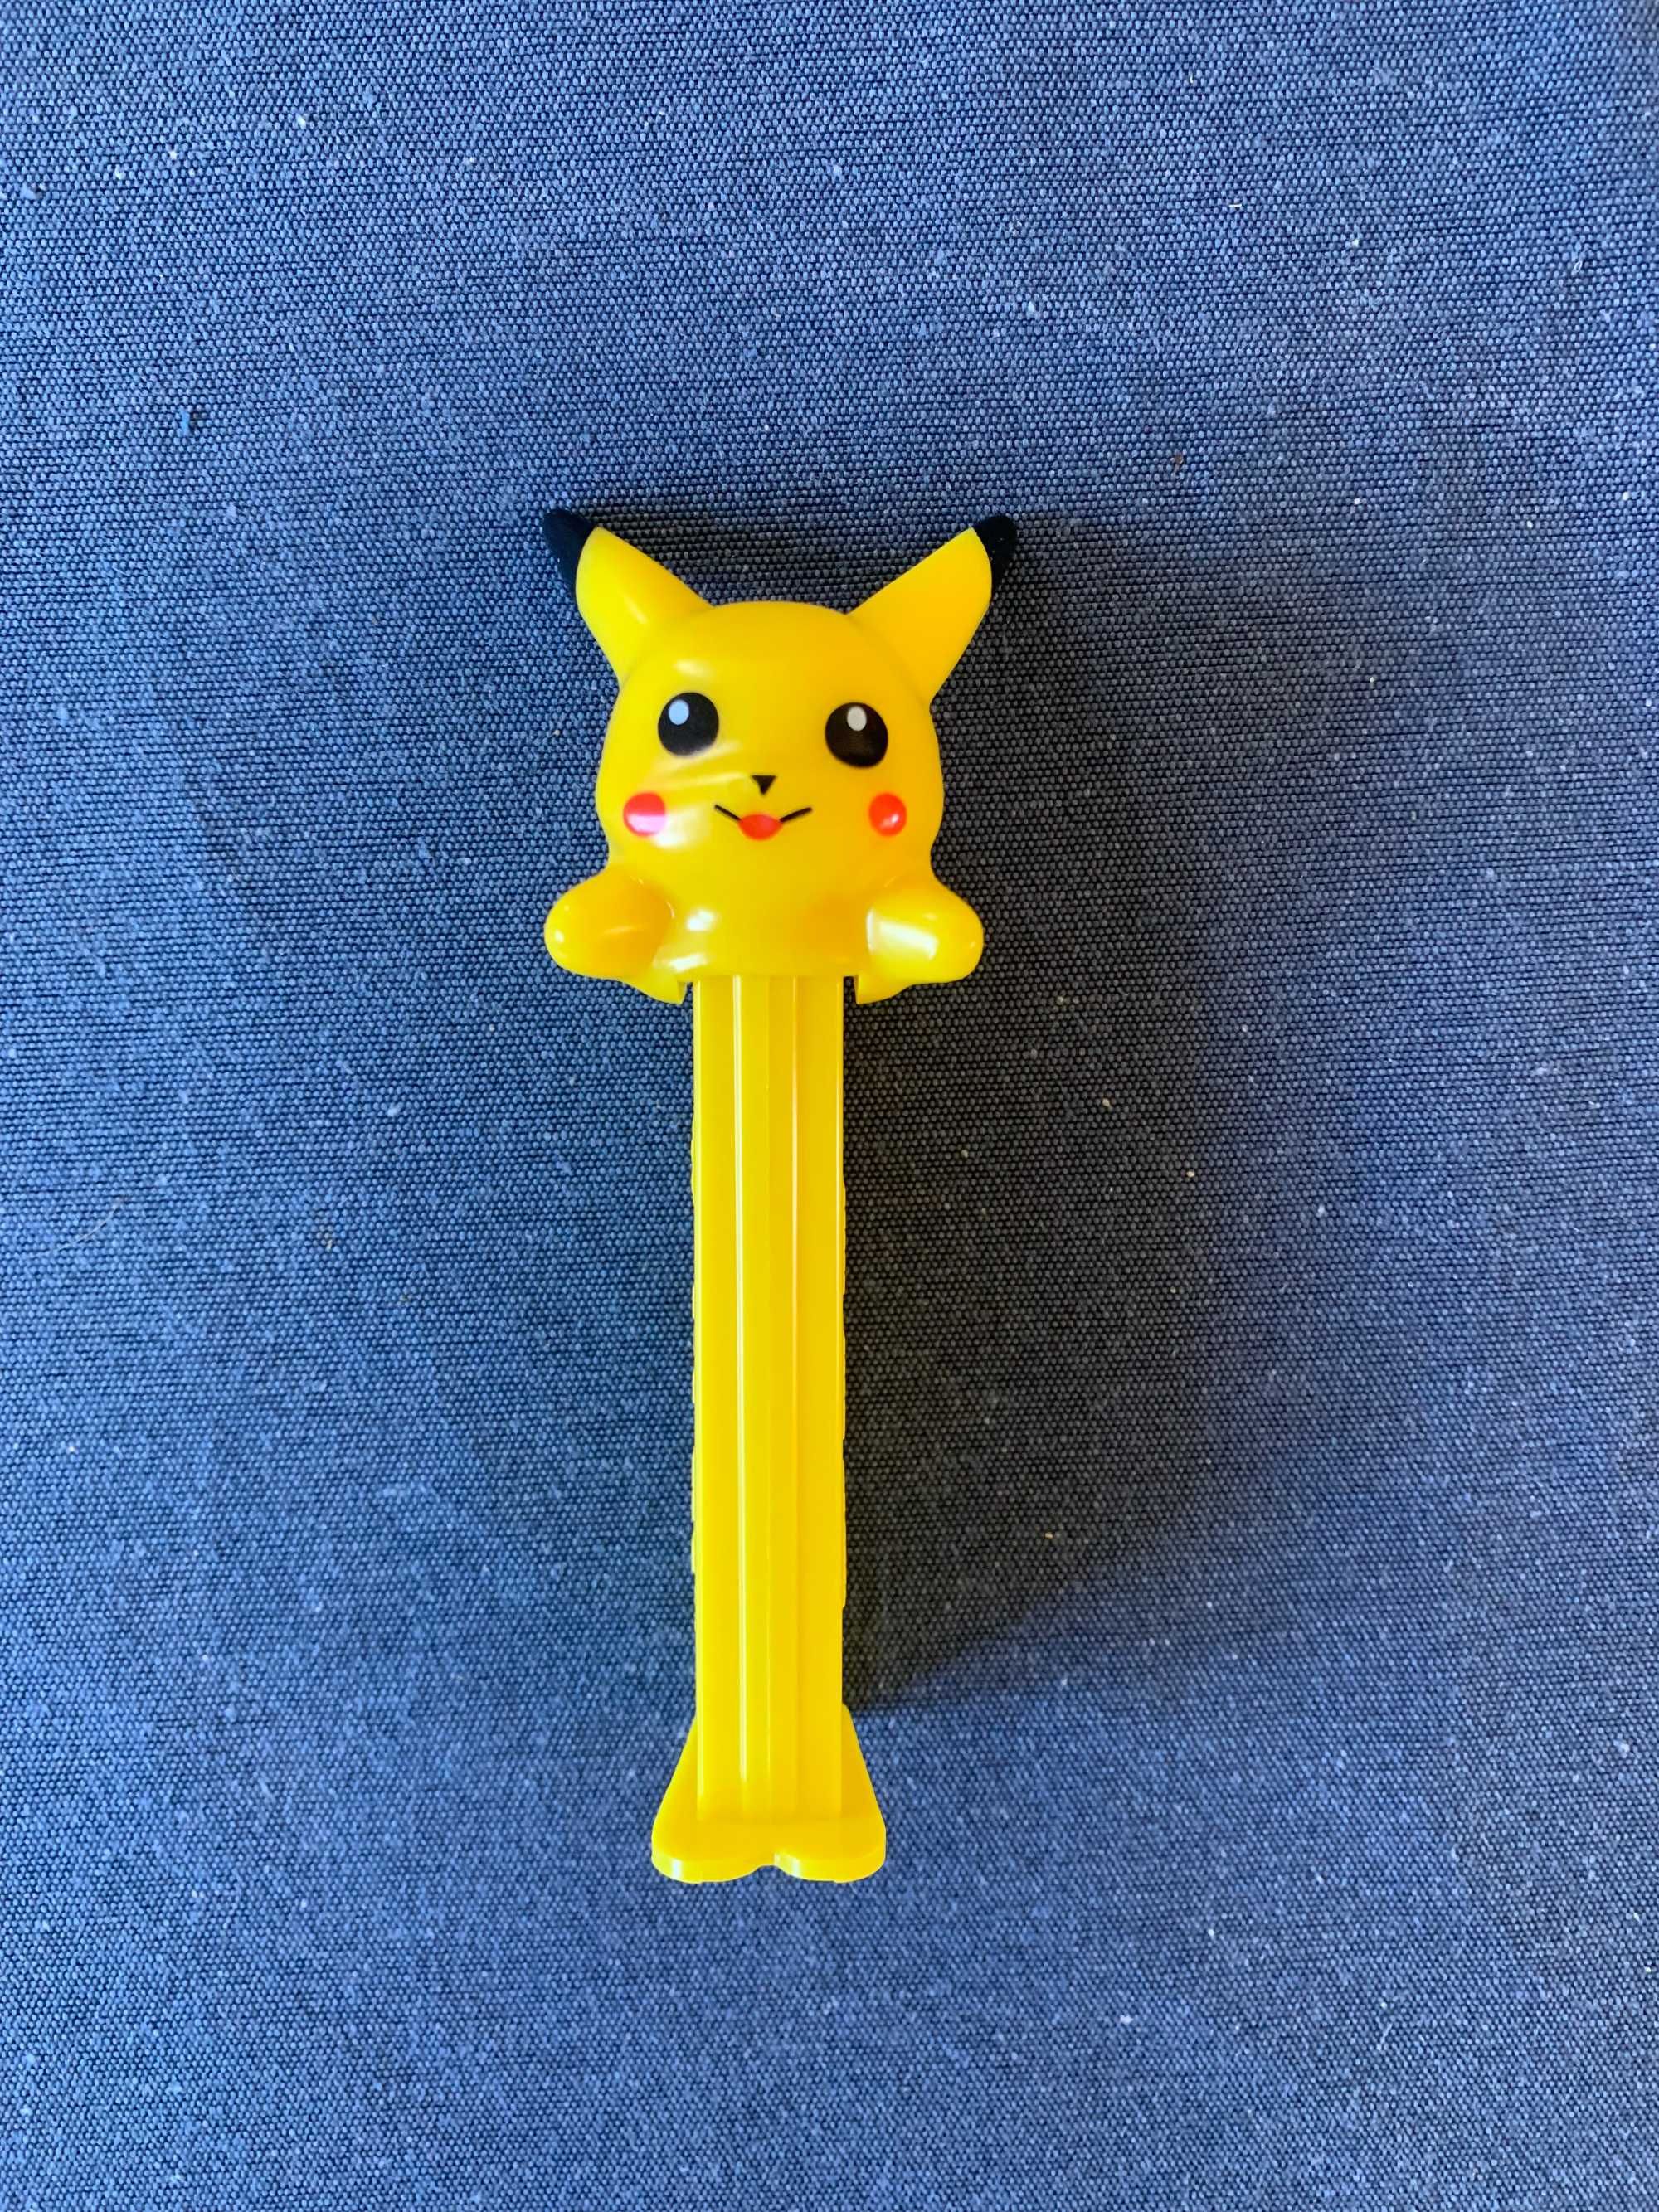 Dispensador Pez Pikachu 2001